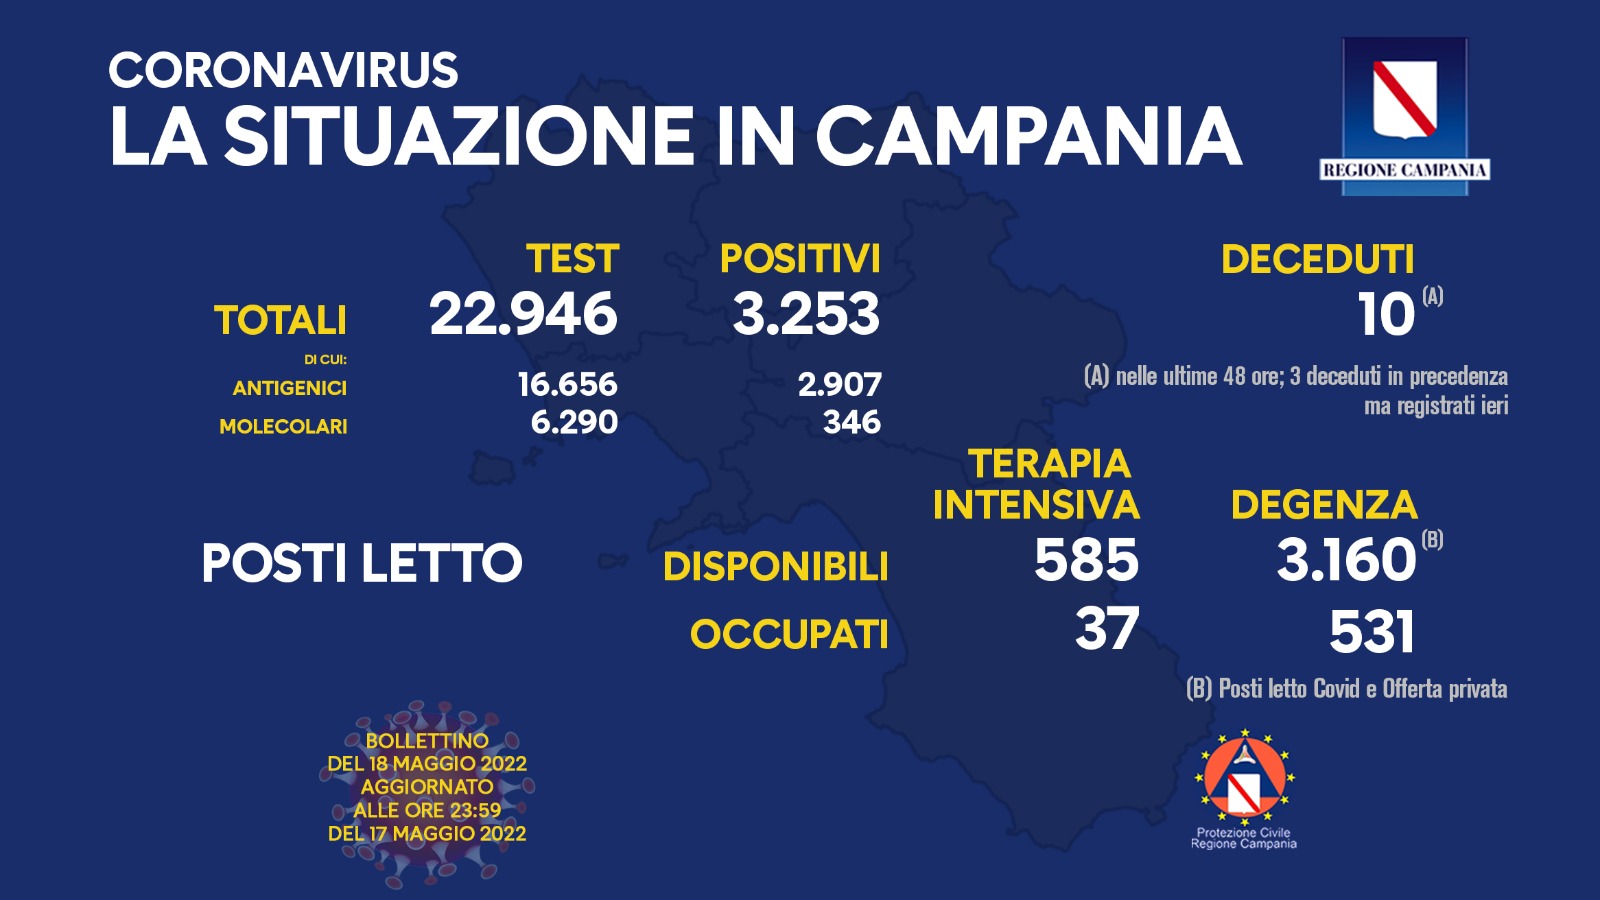 Regione Campania: Coronavirus, Unità di Crisi, Bollettino, 3.253 casi positivi, 10 decessi